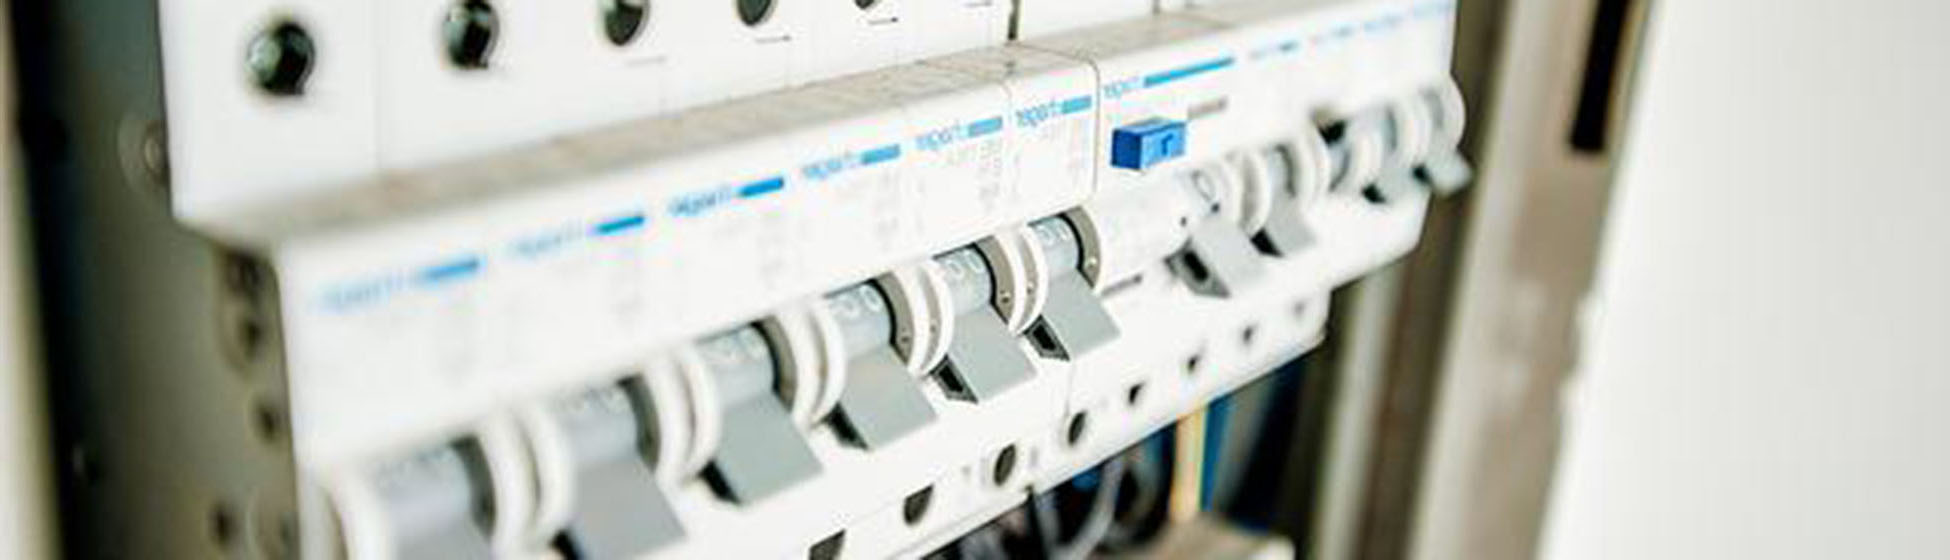 Obligation mise aux normes électriques vente 210210